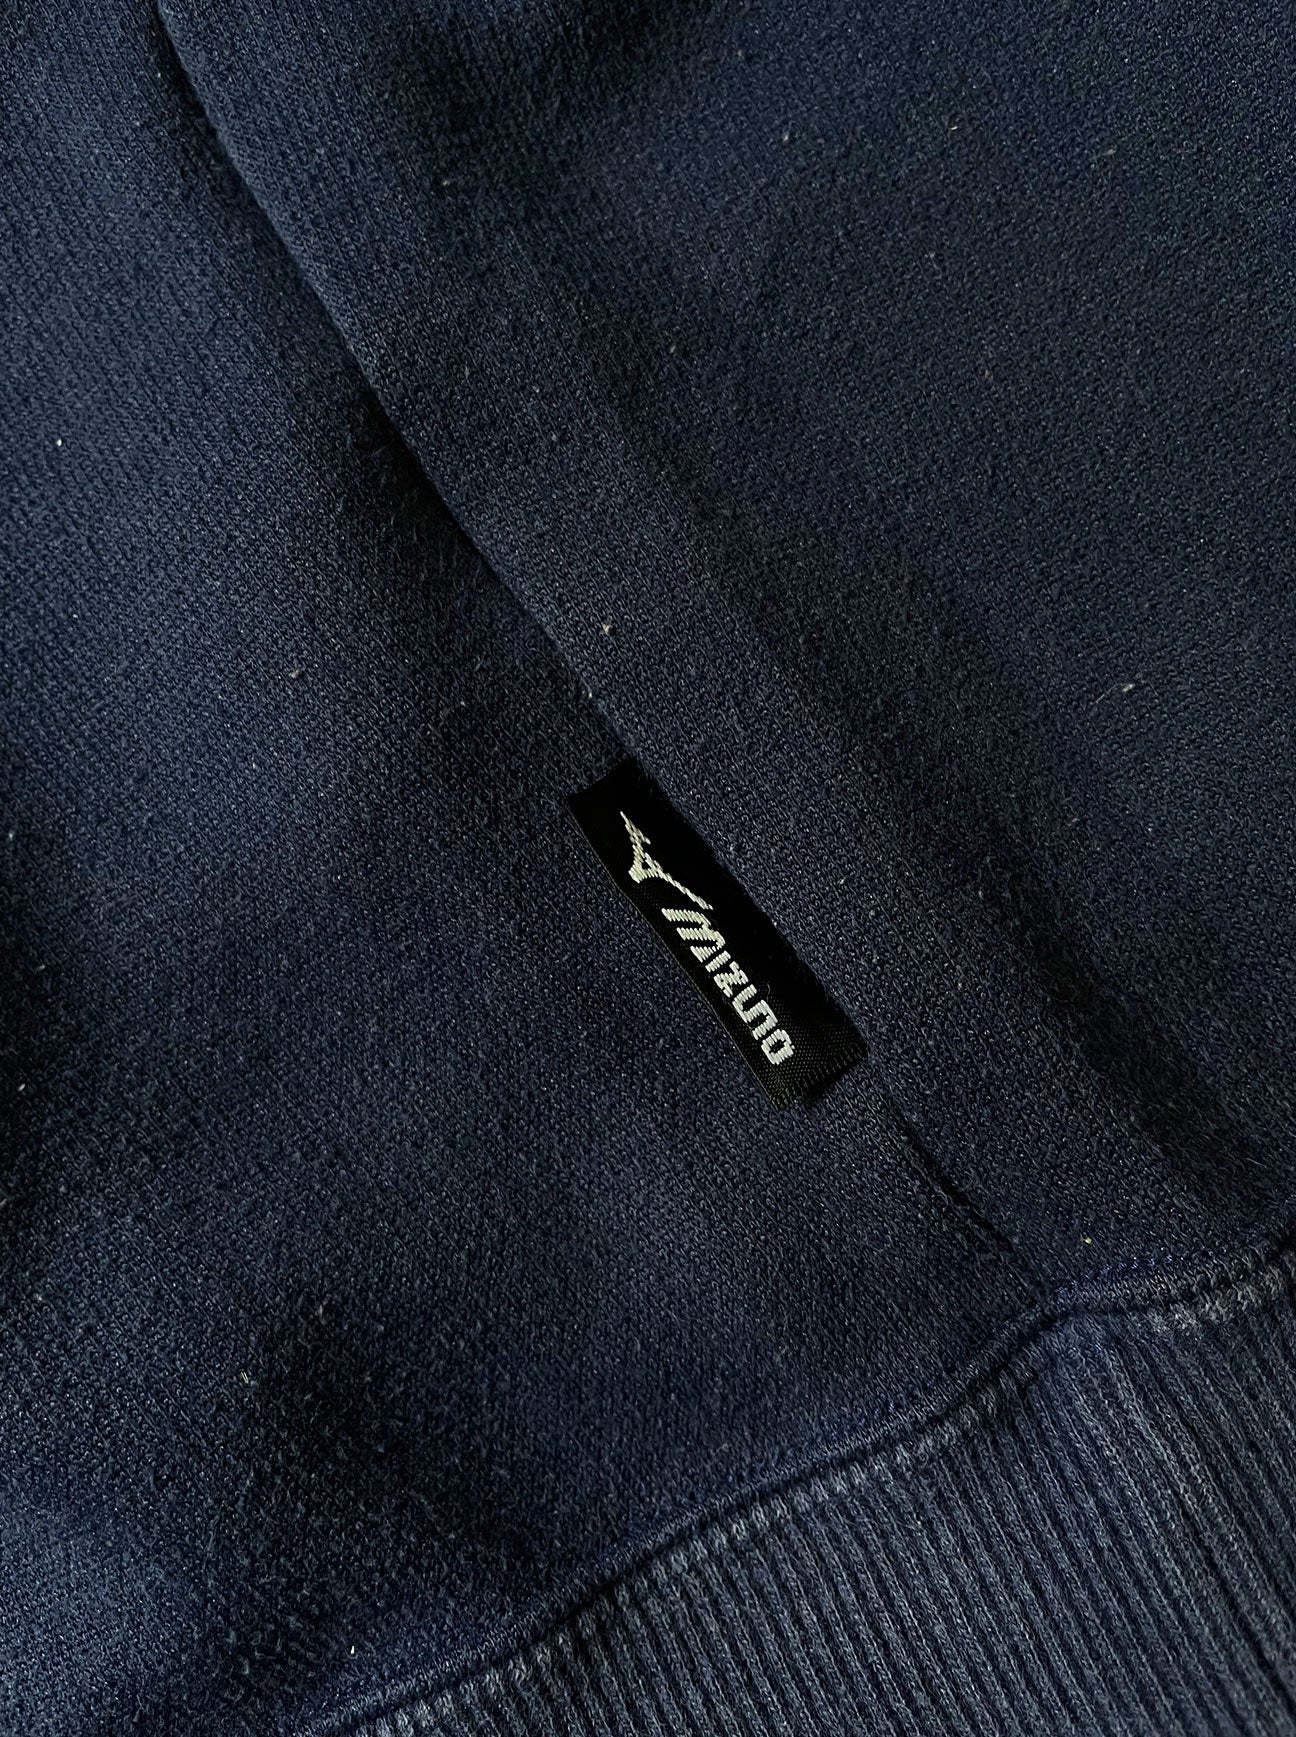 Vintage Mizuno crewneck sweatshirt tag detail